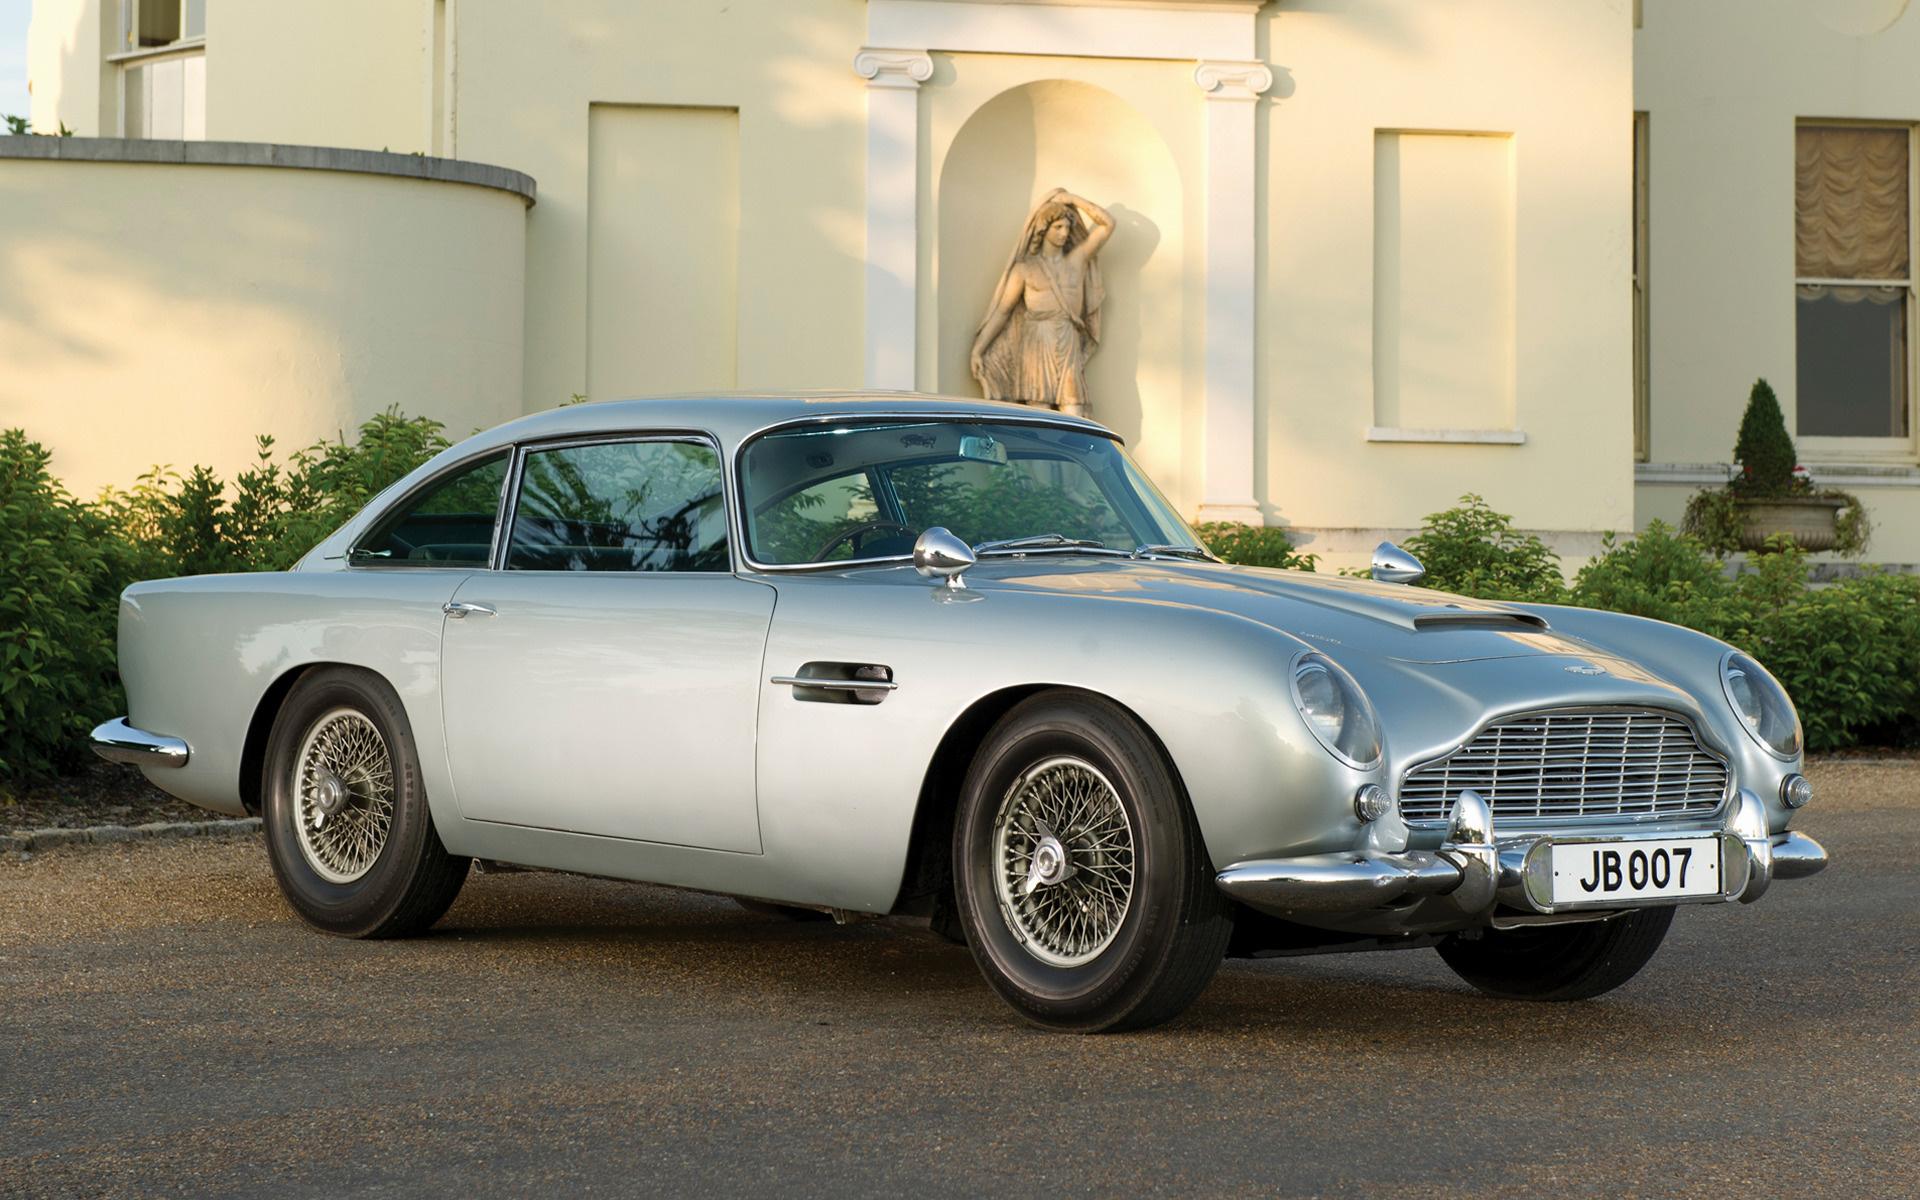 Aston Martin DB5 James Bond Edition and HD Image